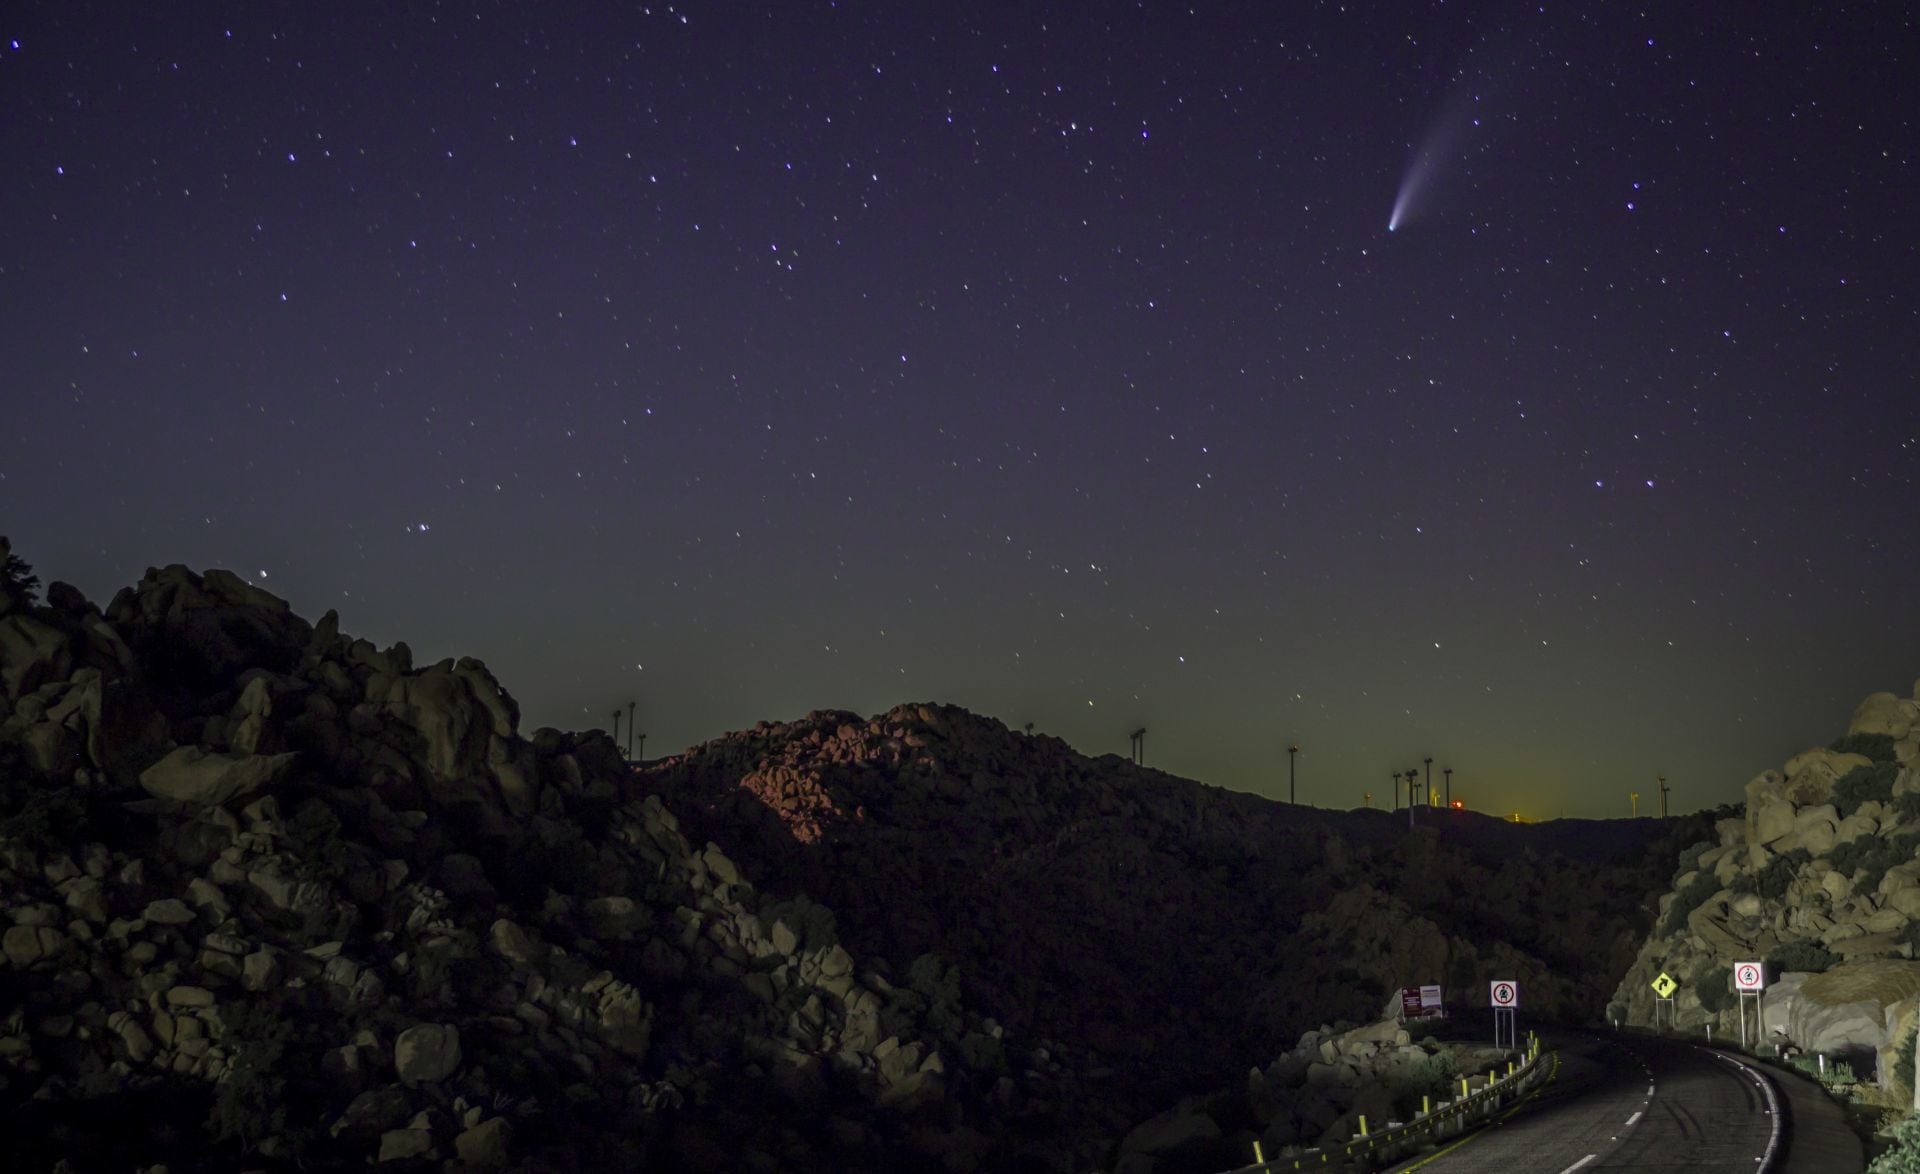 ‘Halcón Milenario’: ¿Cuándo podrás ver el cometa 12P/Pons-Brooks sin binoculares desde México?